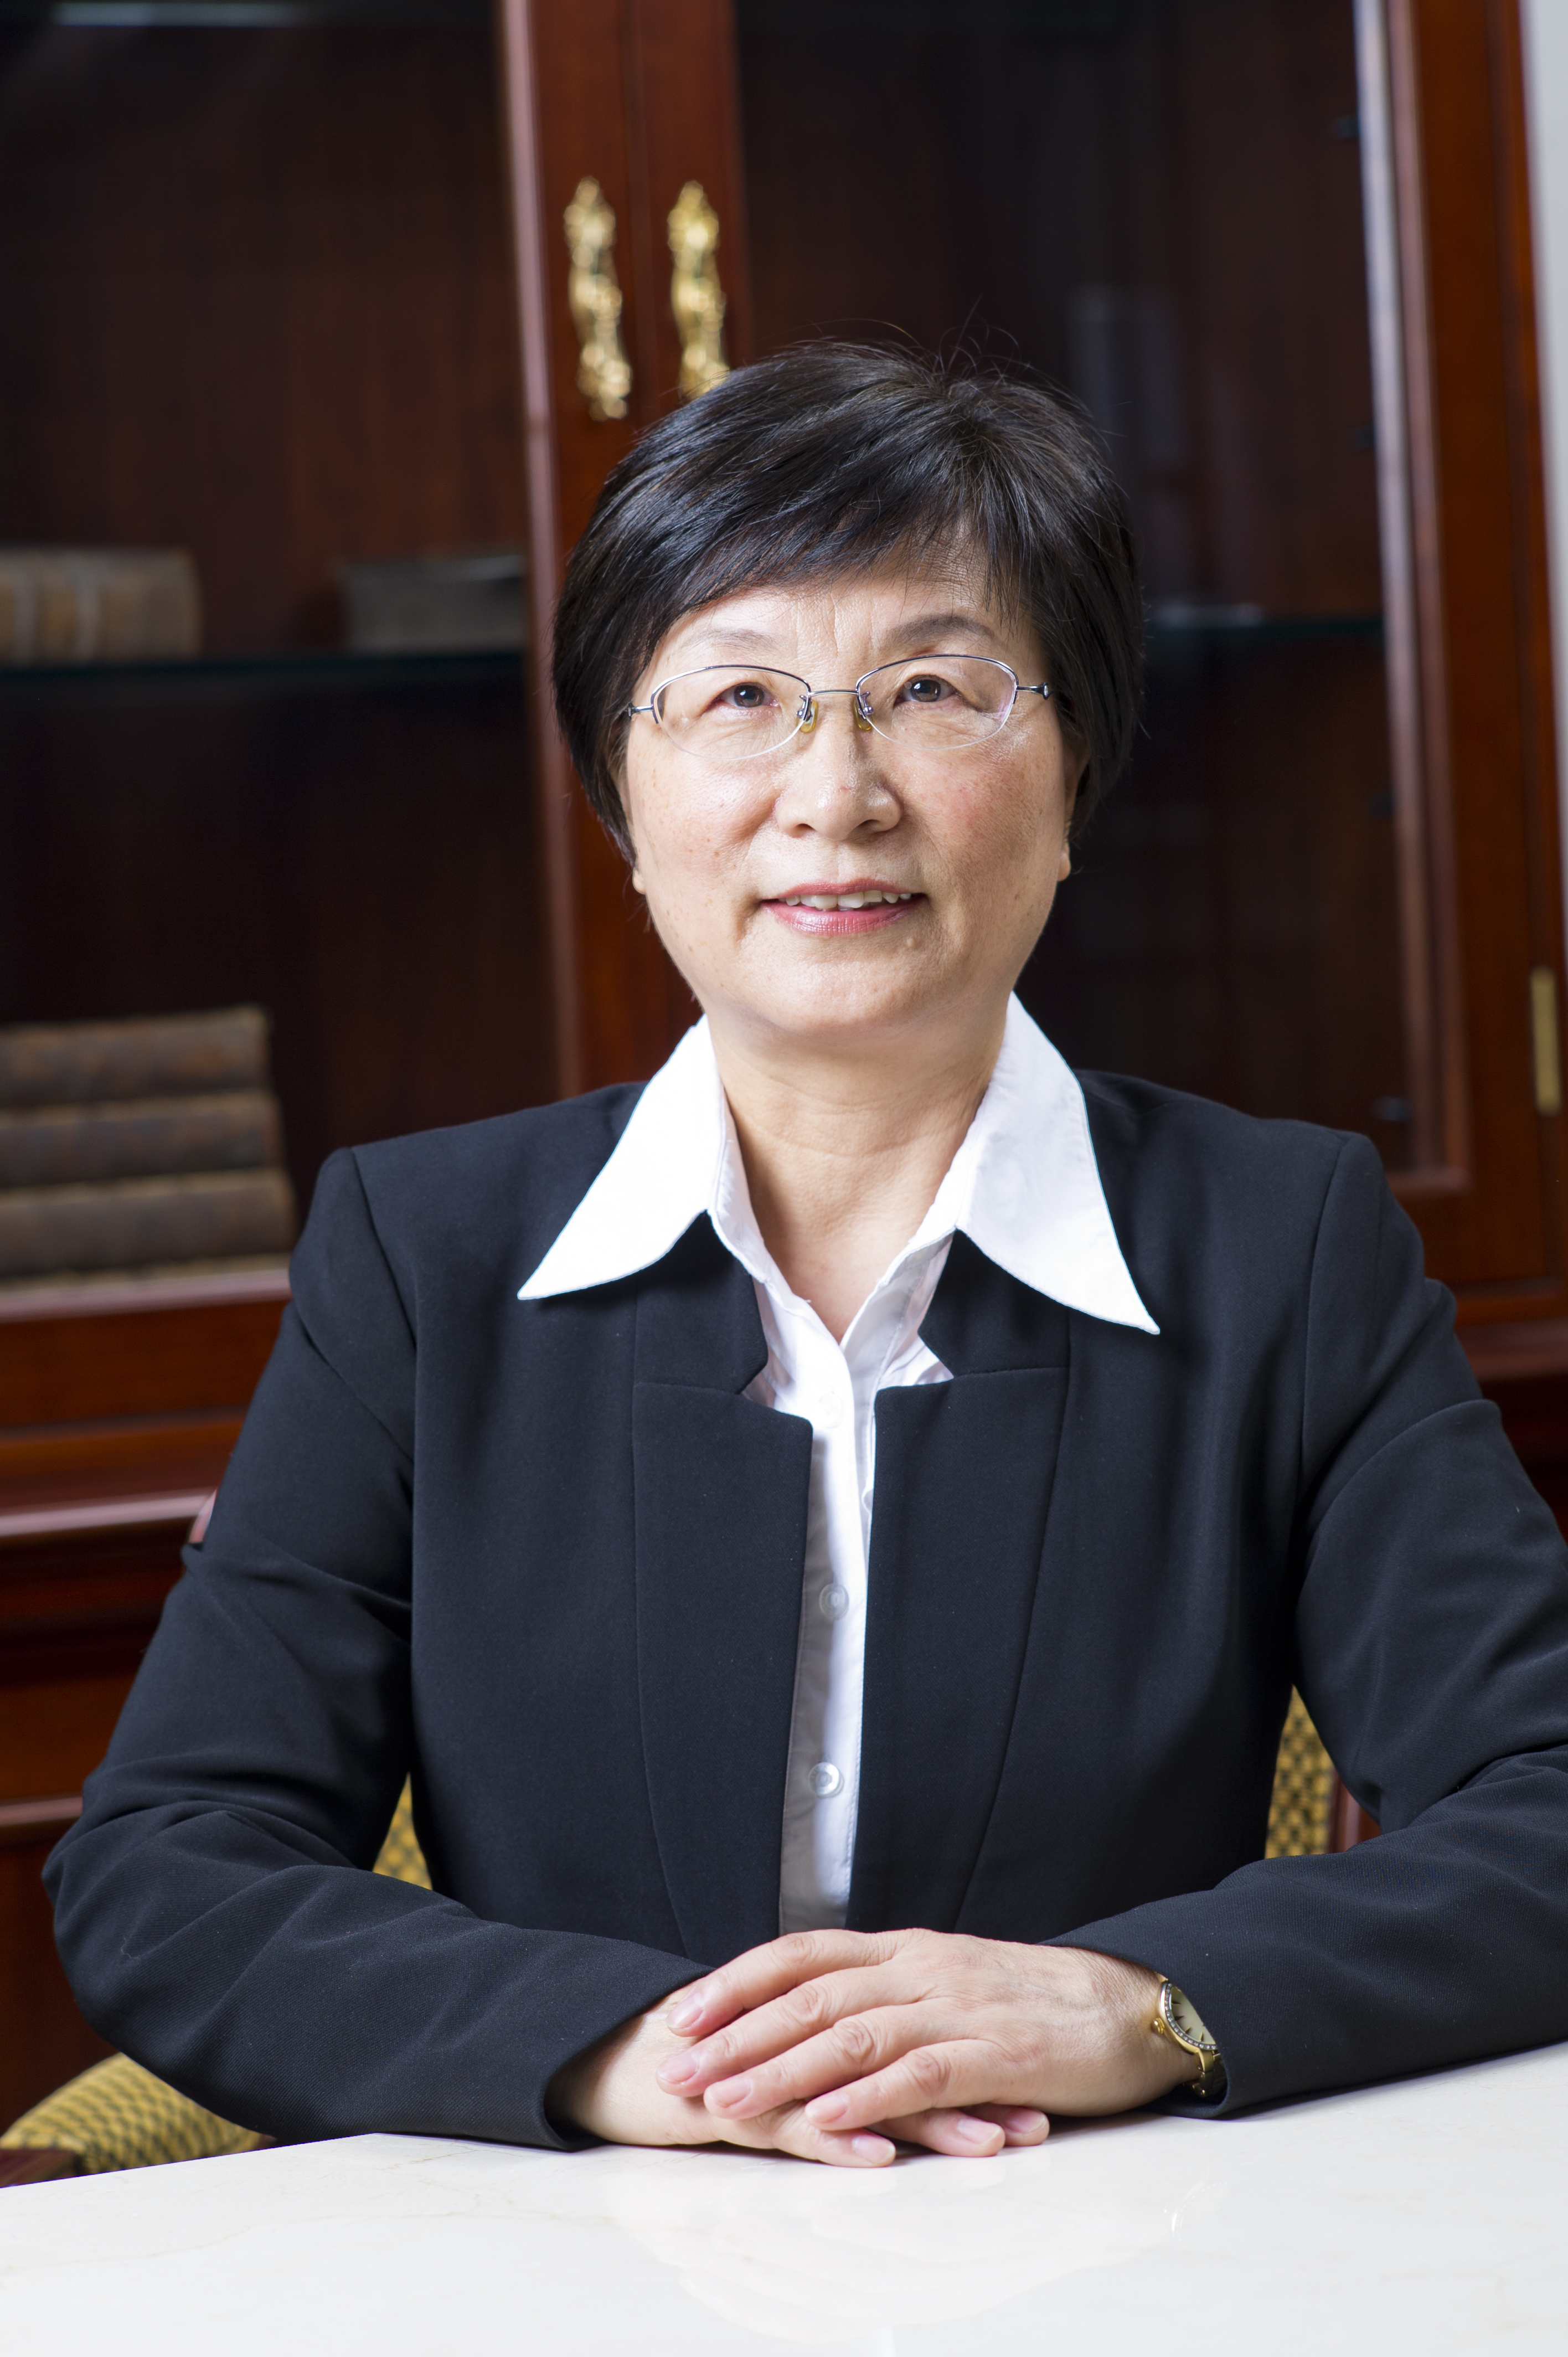 Professor Zhen Jing